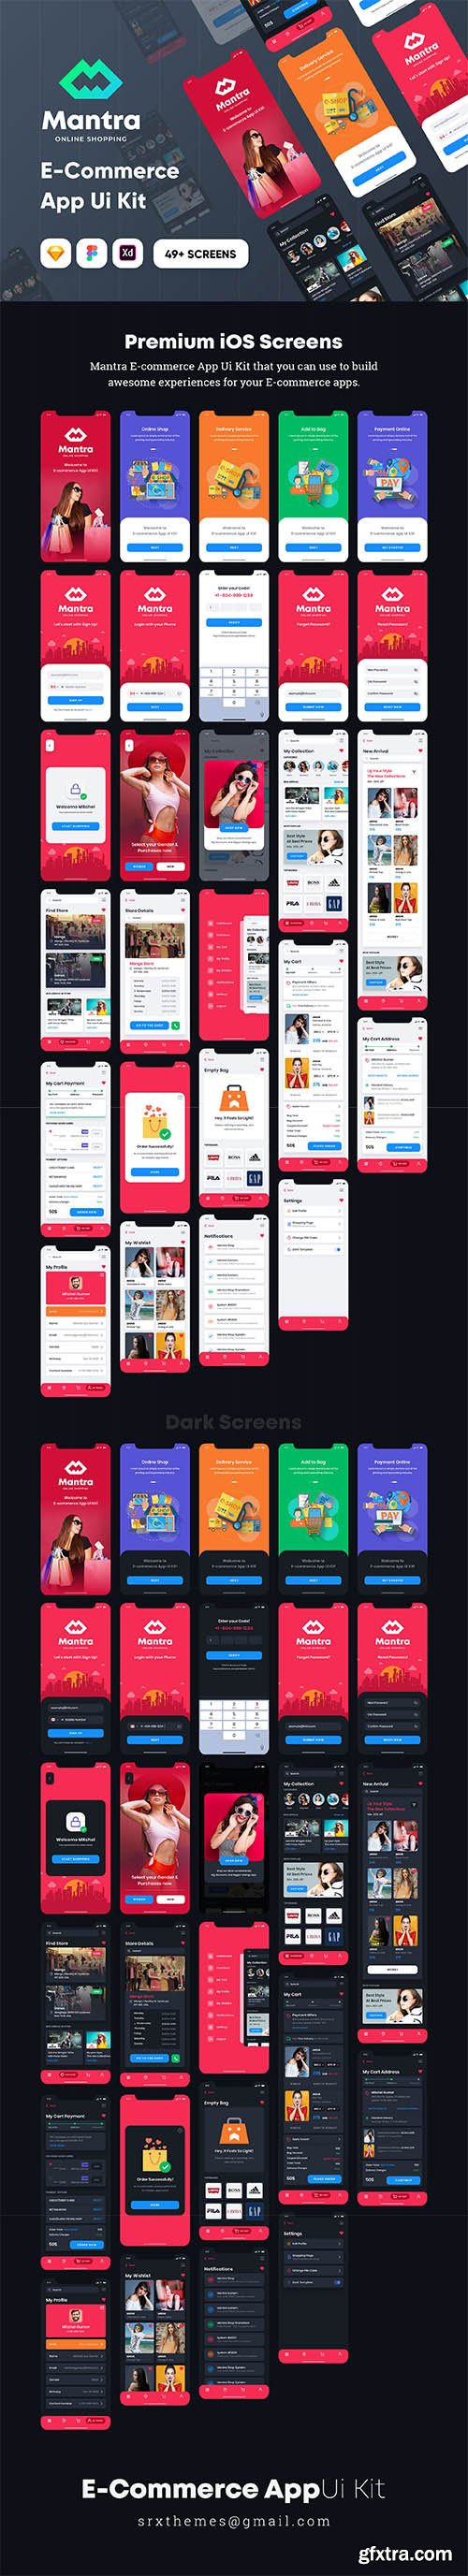 Mantra - E-Commerce Mobile App Ui Kit